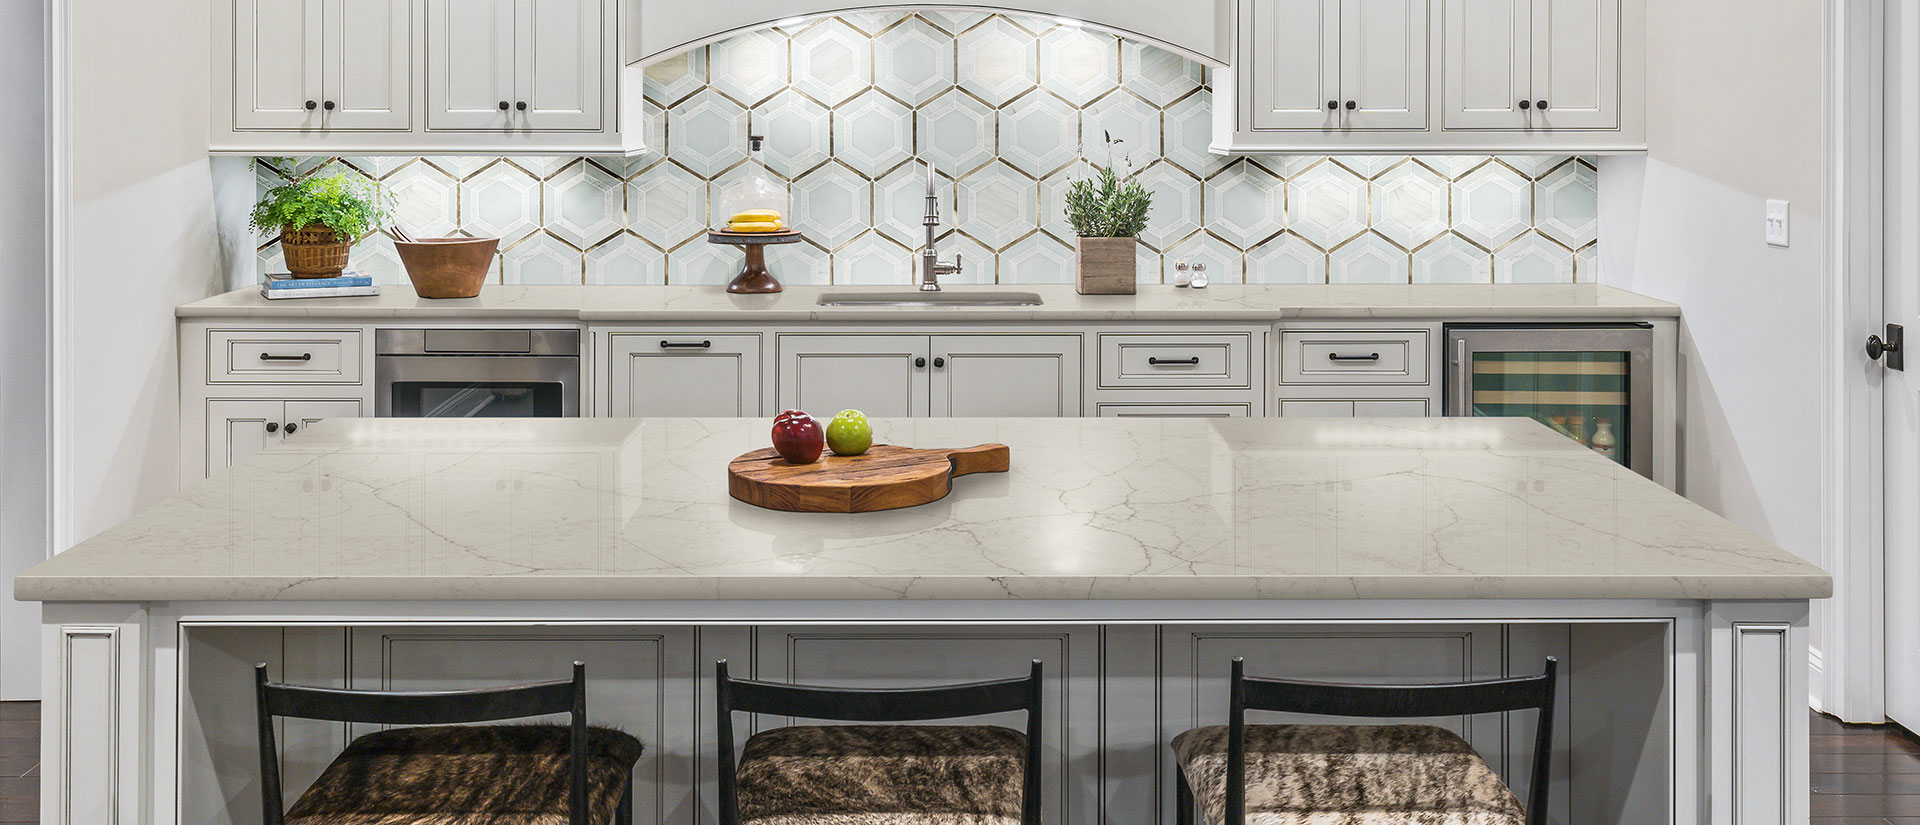 Calacatta Valentin quartz countertop in a luxurious kitchen with marble backsplash